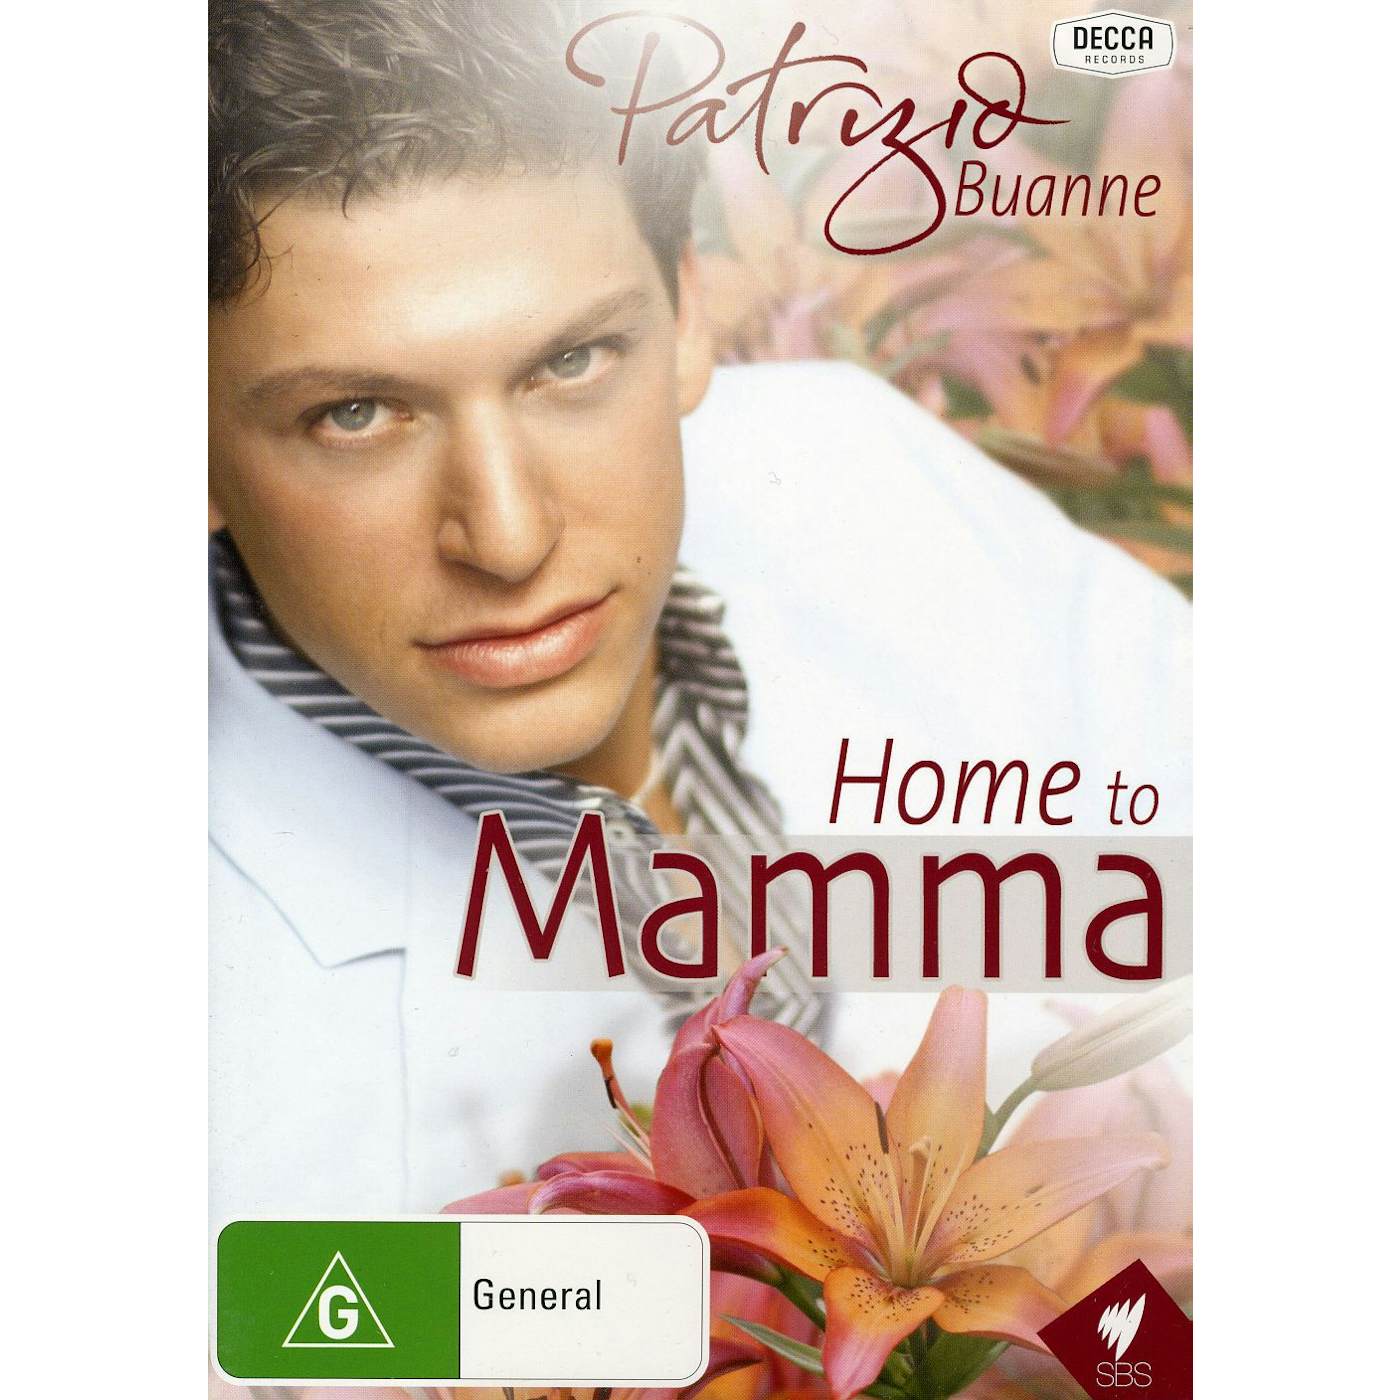 Patrizio Buanne HOME TO MAMMA CD